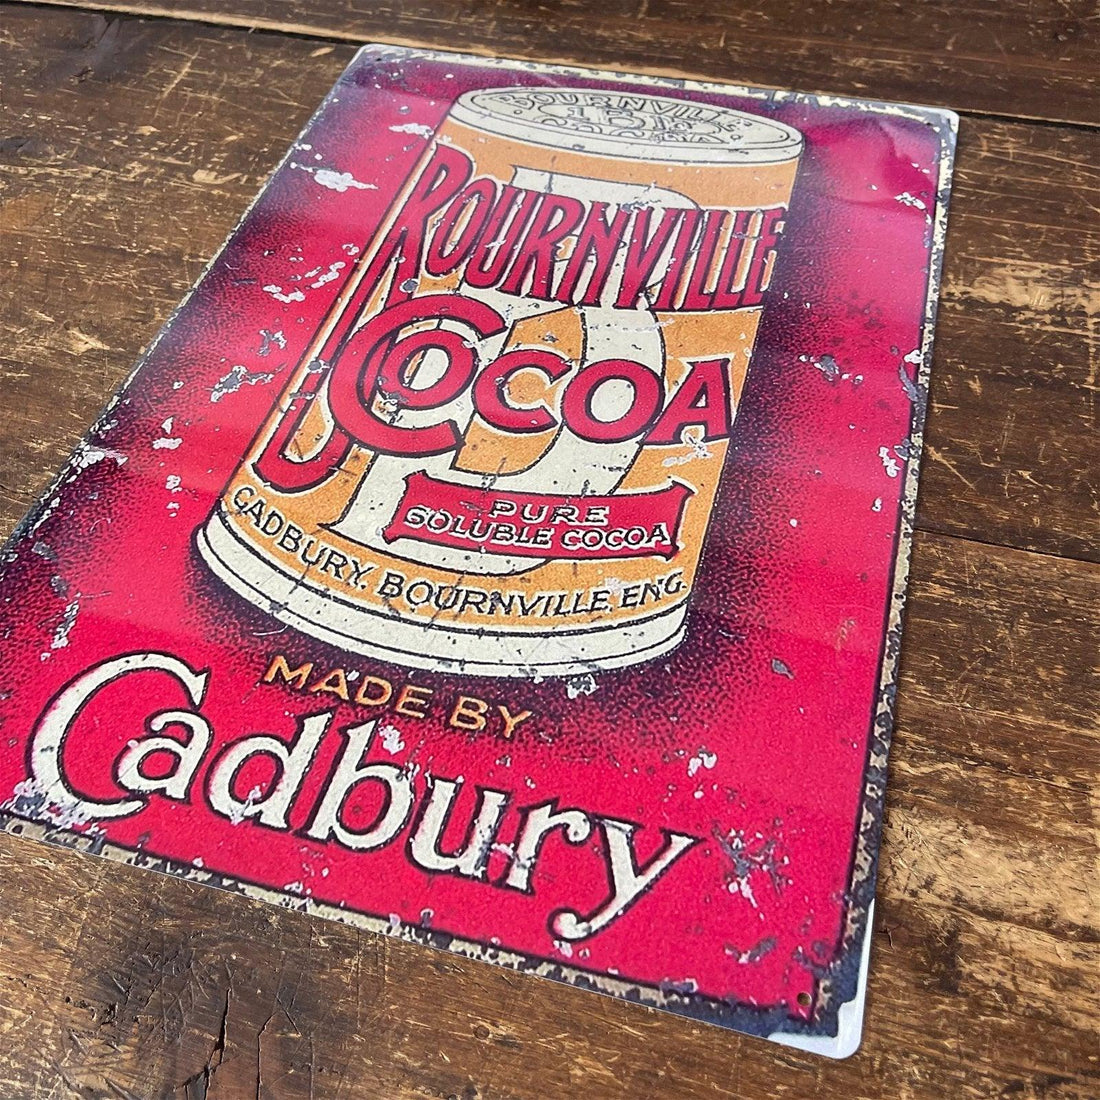 Vintage Metal Sign - Retro Advertising Cadbury Bournville Cocoa - £27.99 - Retro Advertising 